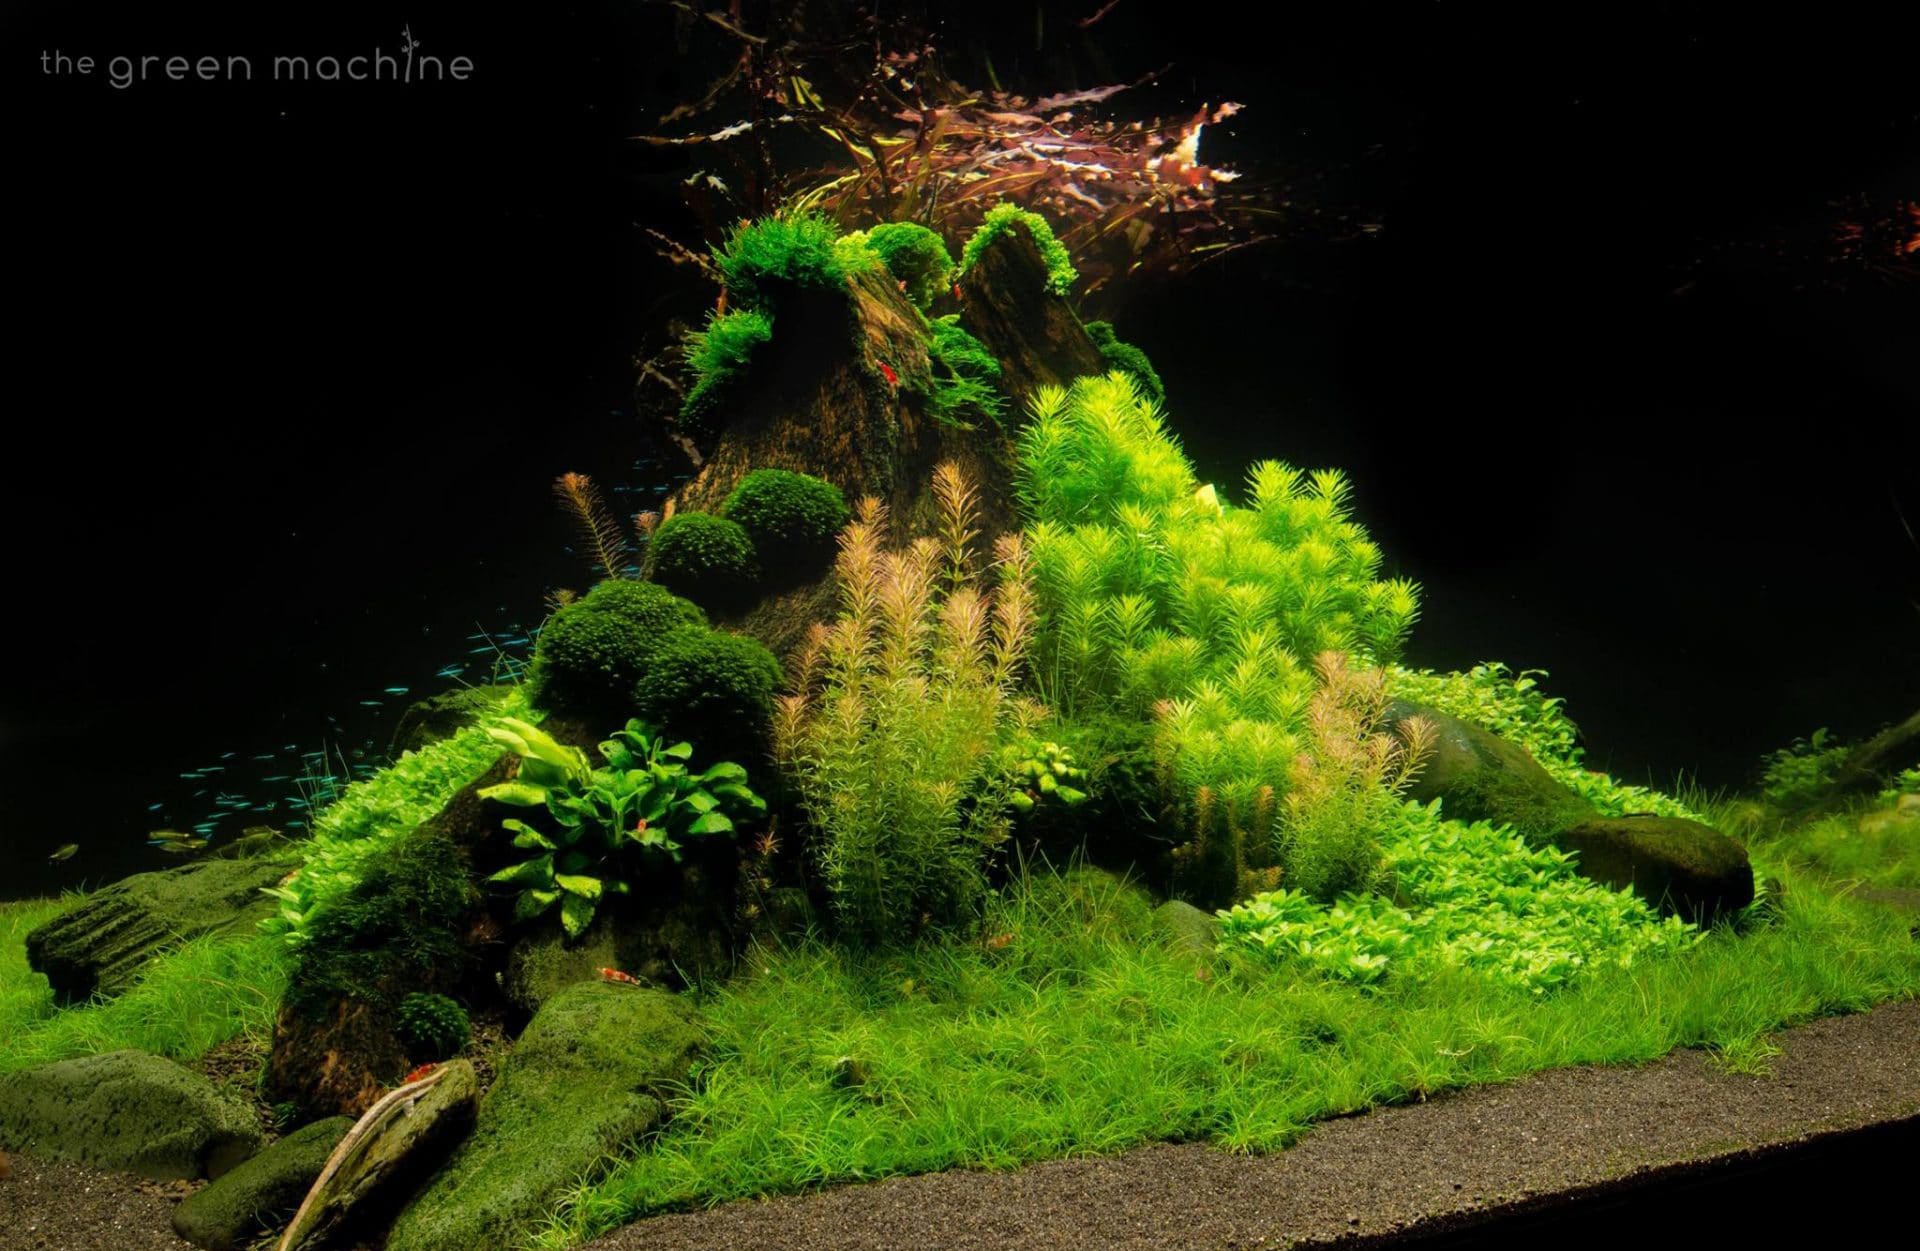 hemianthus callitrichoides (hc cuba) aquarium plant – an